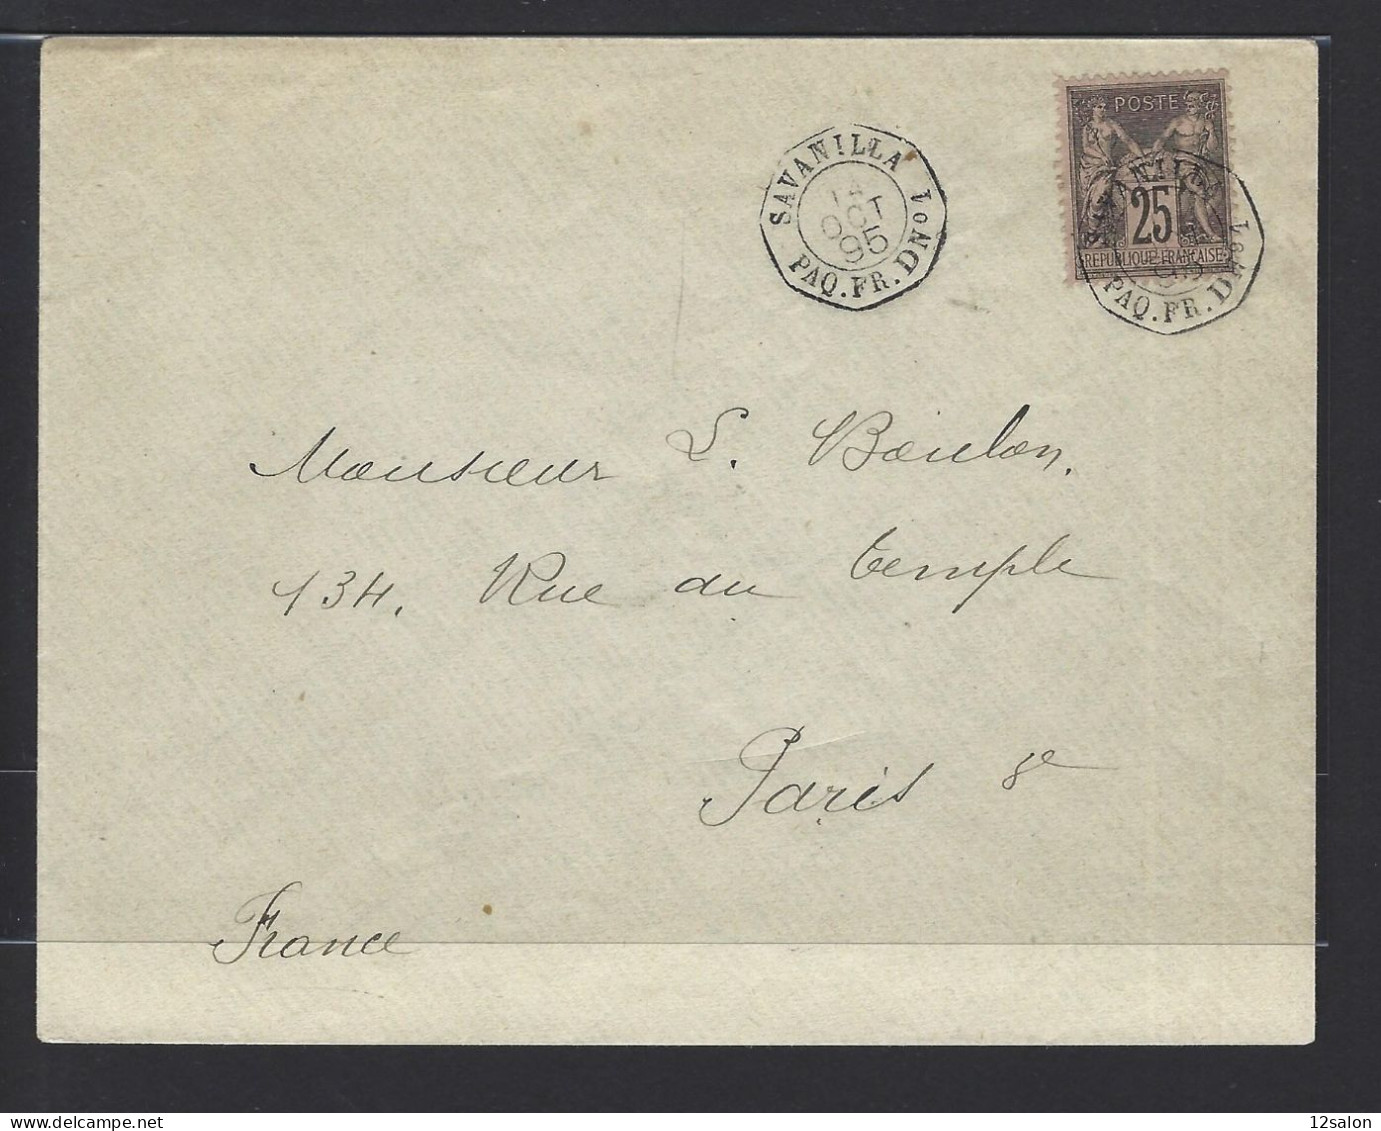 MARITIME SAGE N°97 OBL CAD Octogone Sur La Pointe "Savanilla Paq FR D N°1" (1895) Répété à Côté (Salles N°1505 - Ind 20) - Correo Marítimo